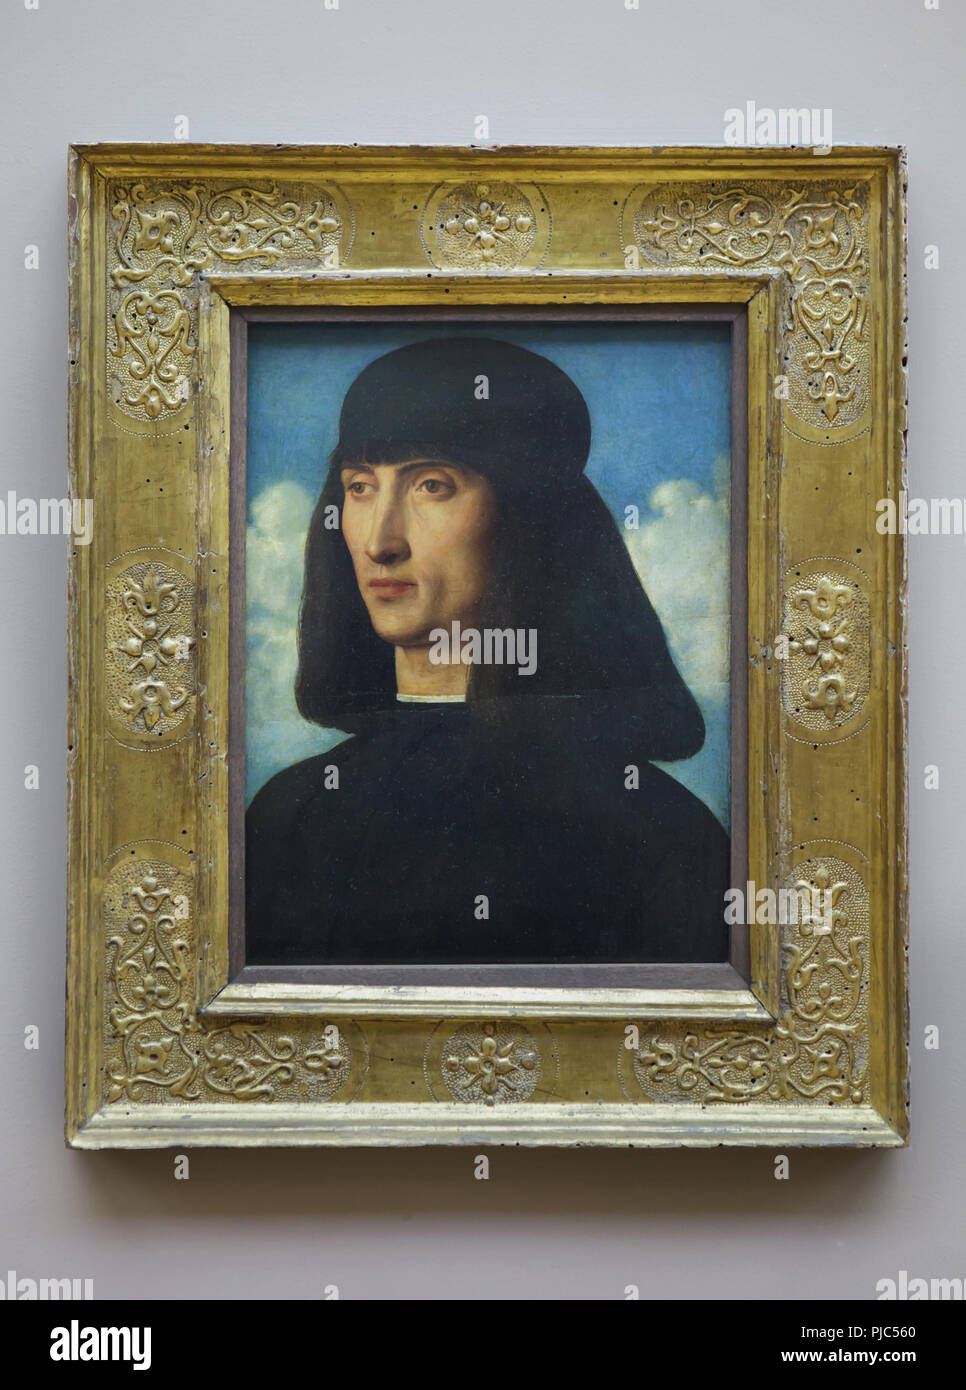 Ritratto di un uomo dal Rinascimento italiano pittore Giovanni Bellini (ca. 1490-1495) sul display al museo del Louvre a Parigi, Francia. Foto Stock